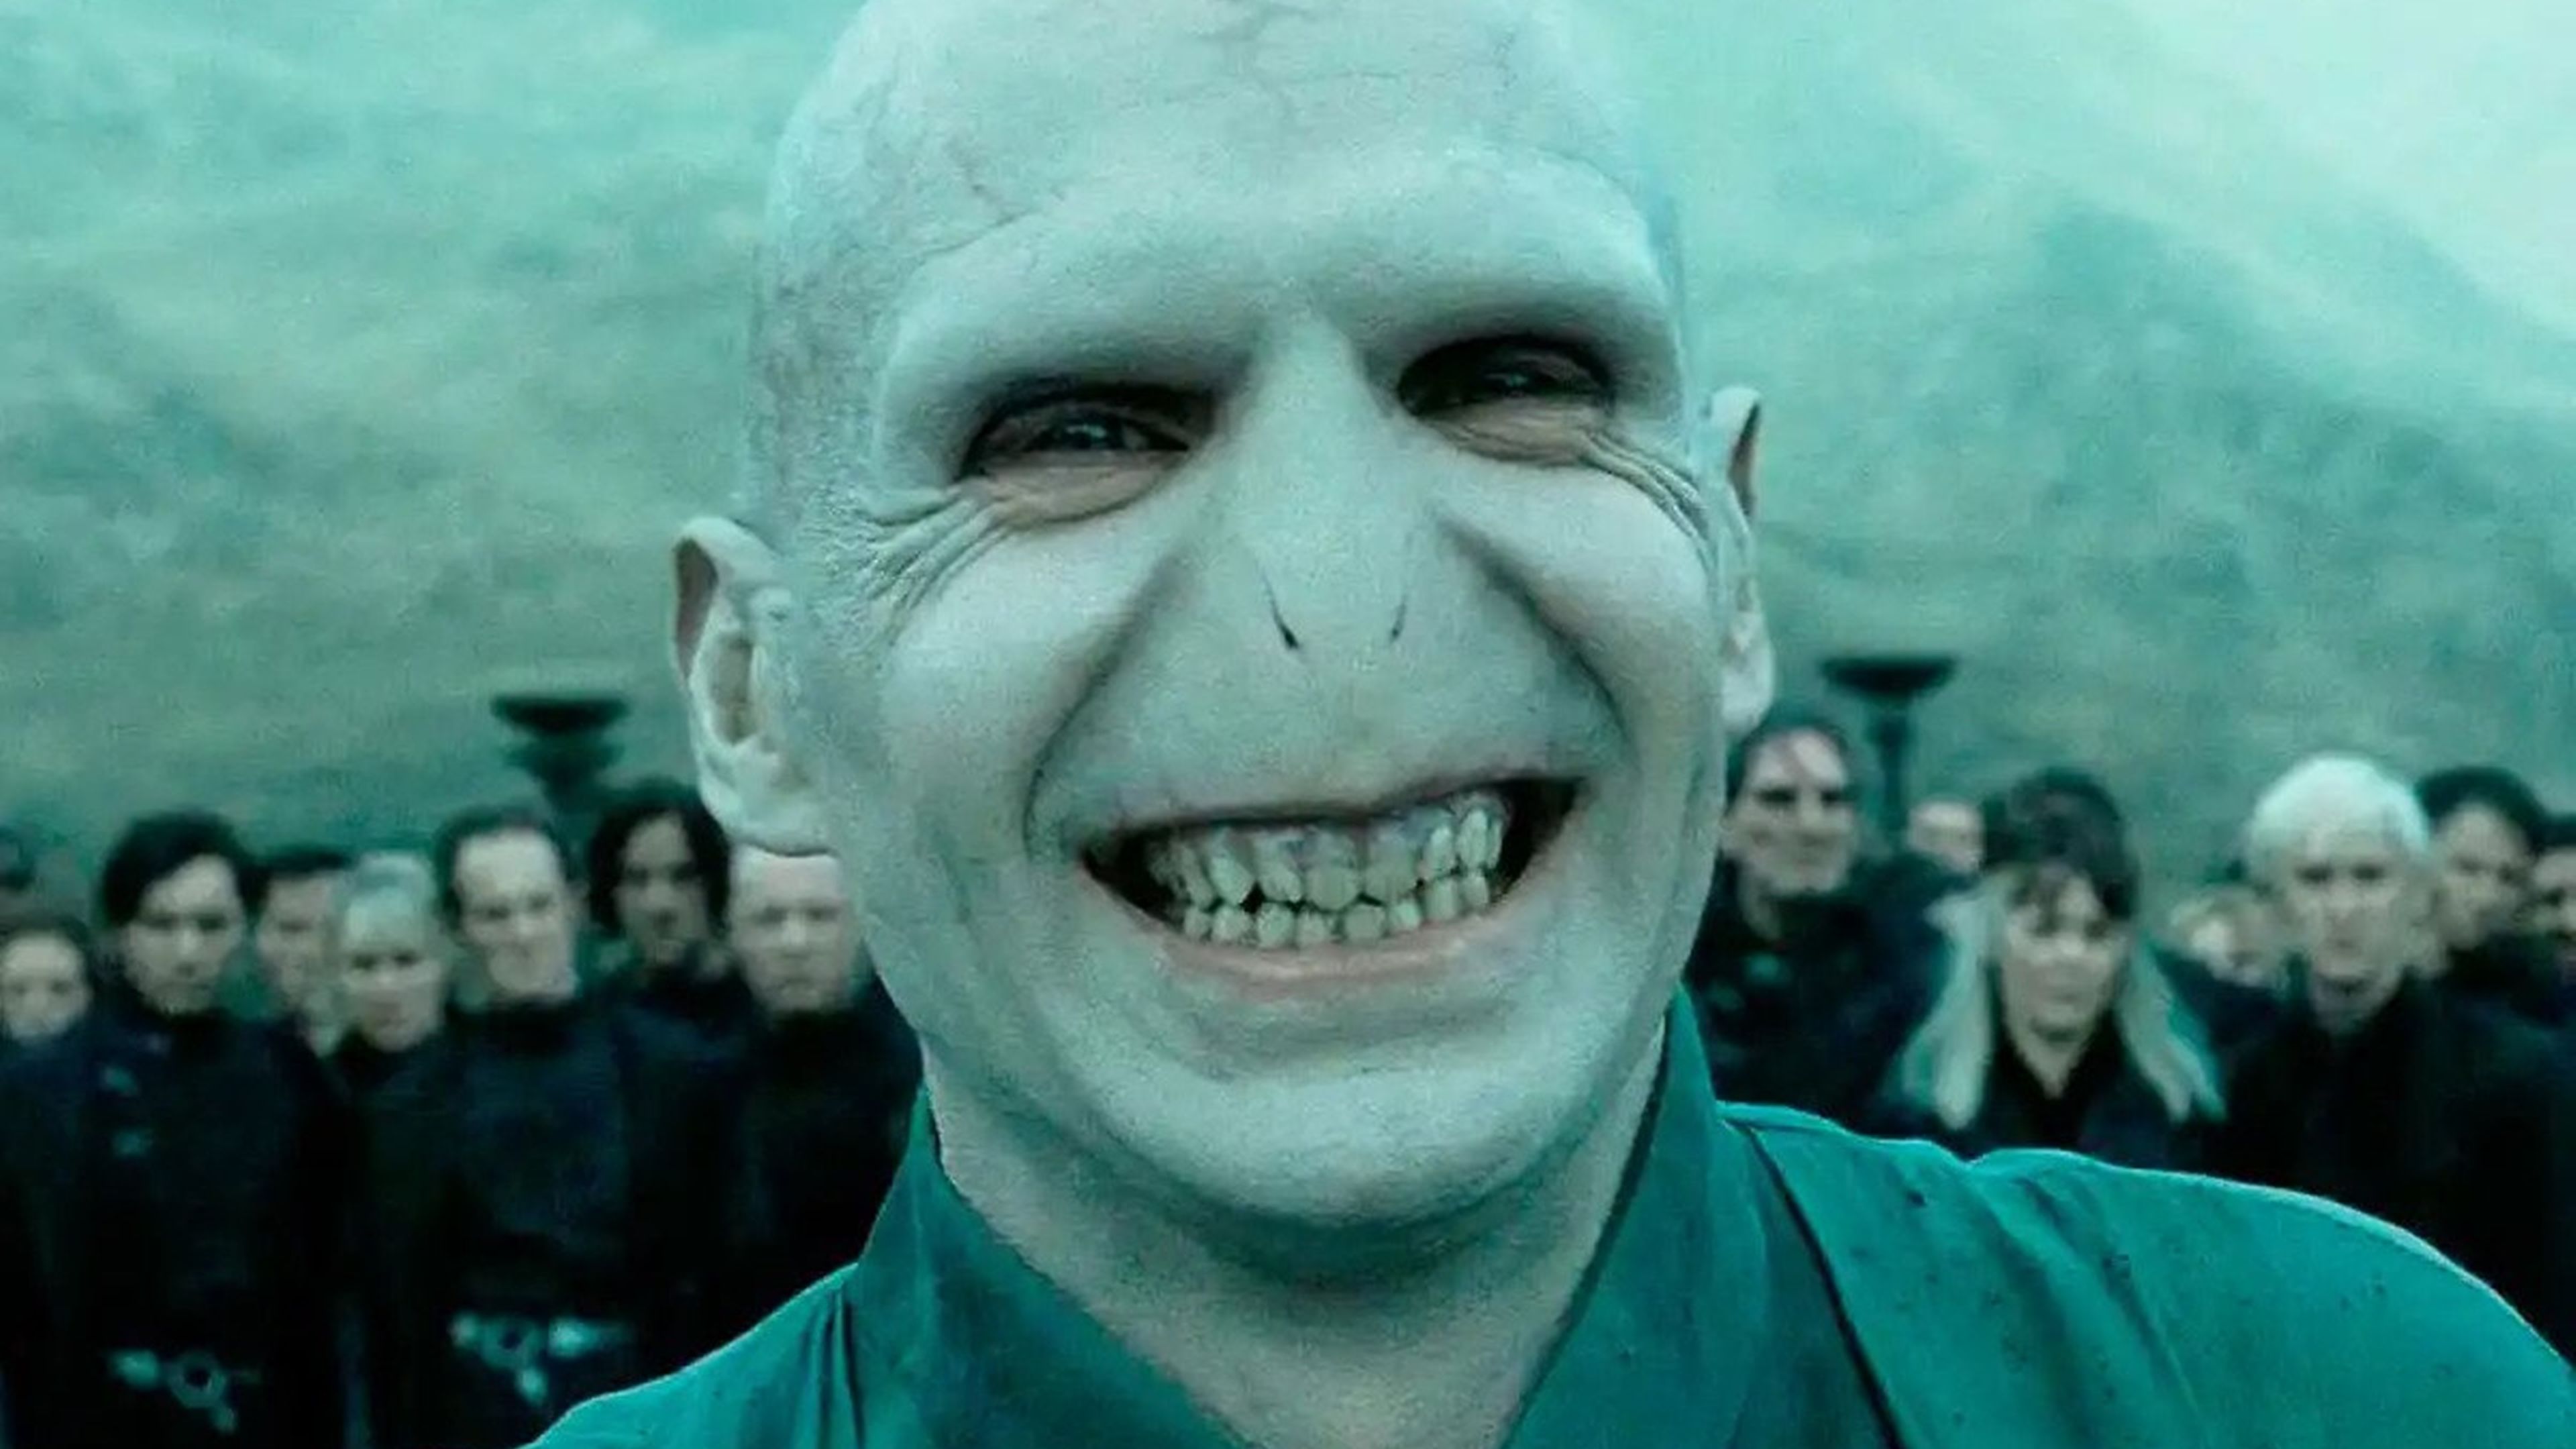 Harry Potter - Voldemort